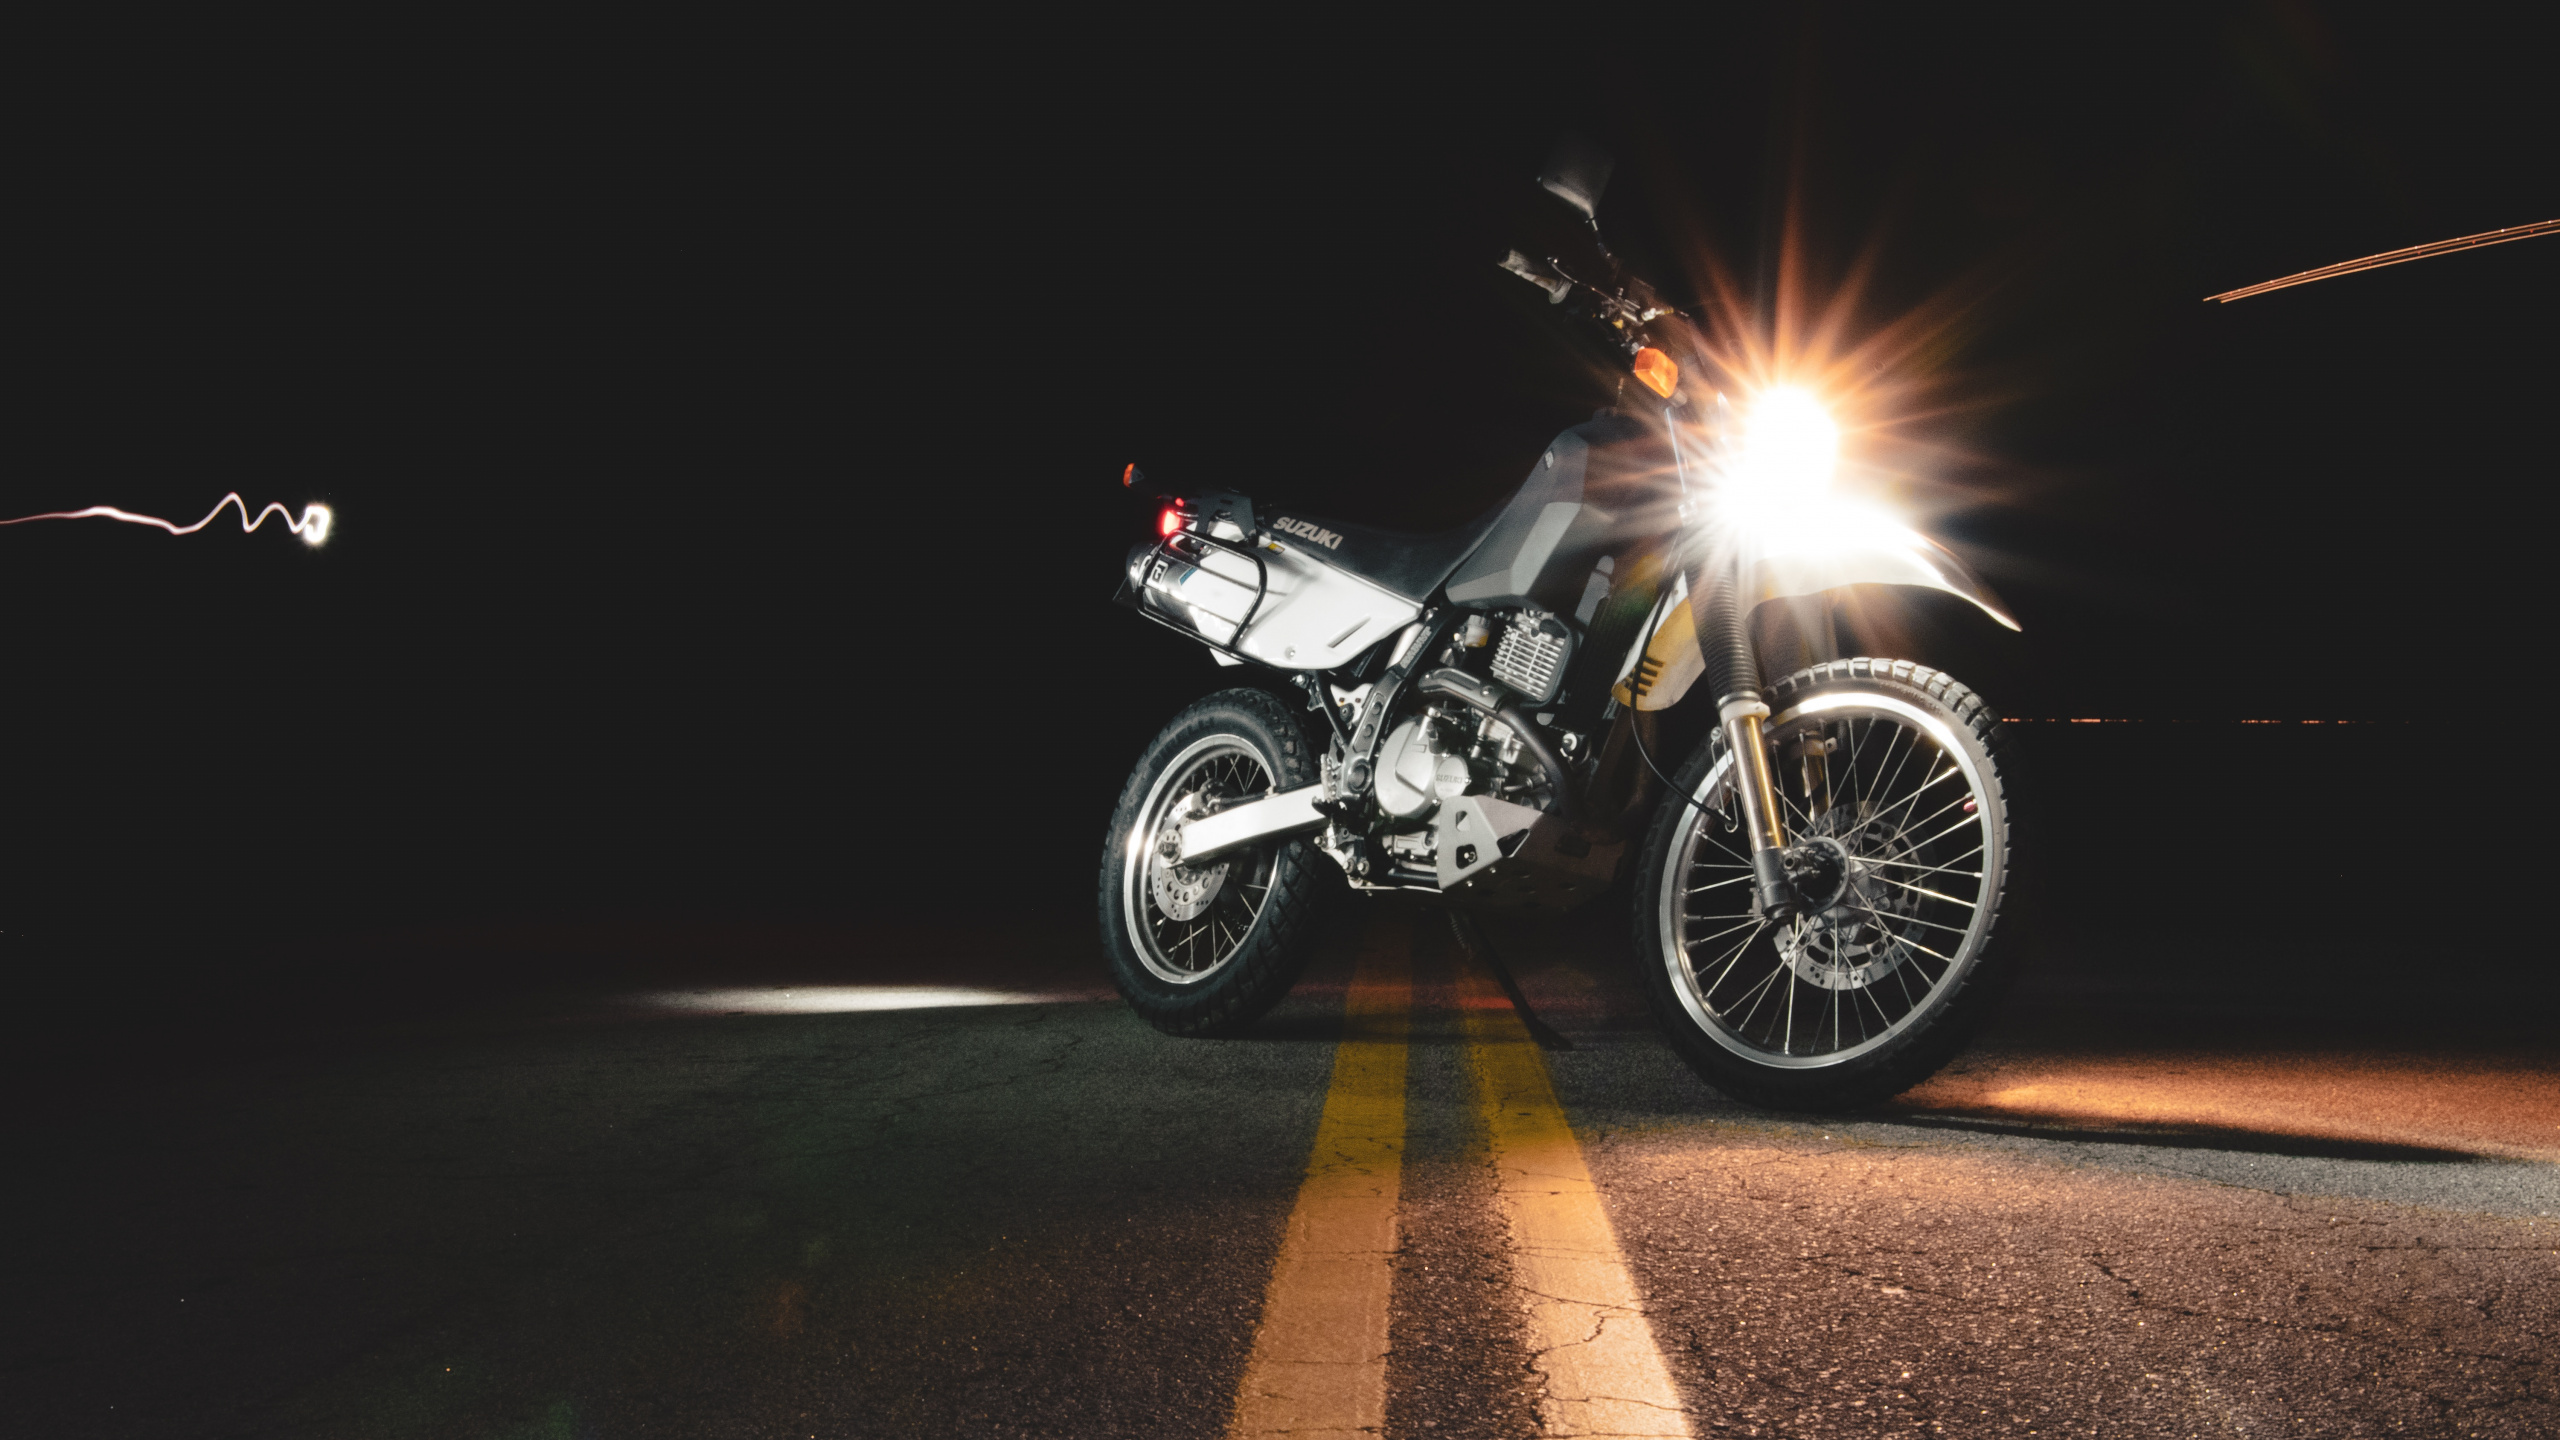 Motocicleta Negra y Plateada en la Carretera Durante la Noche. Wallpaper in 2560x1440 Resolution